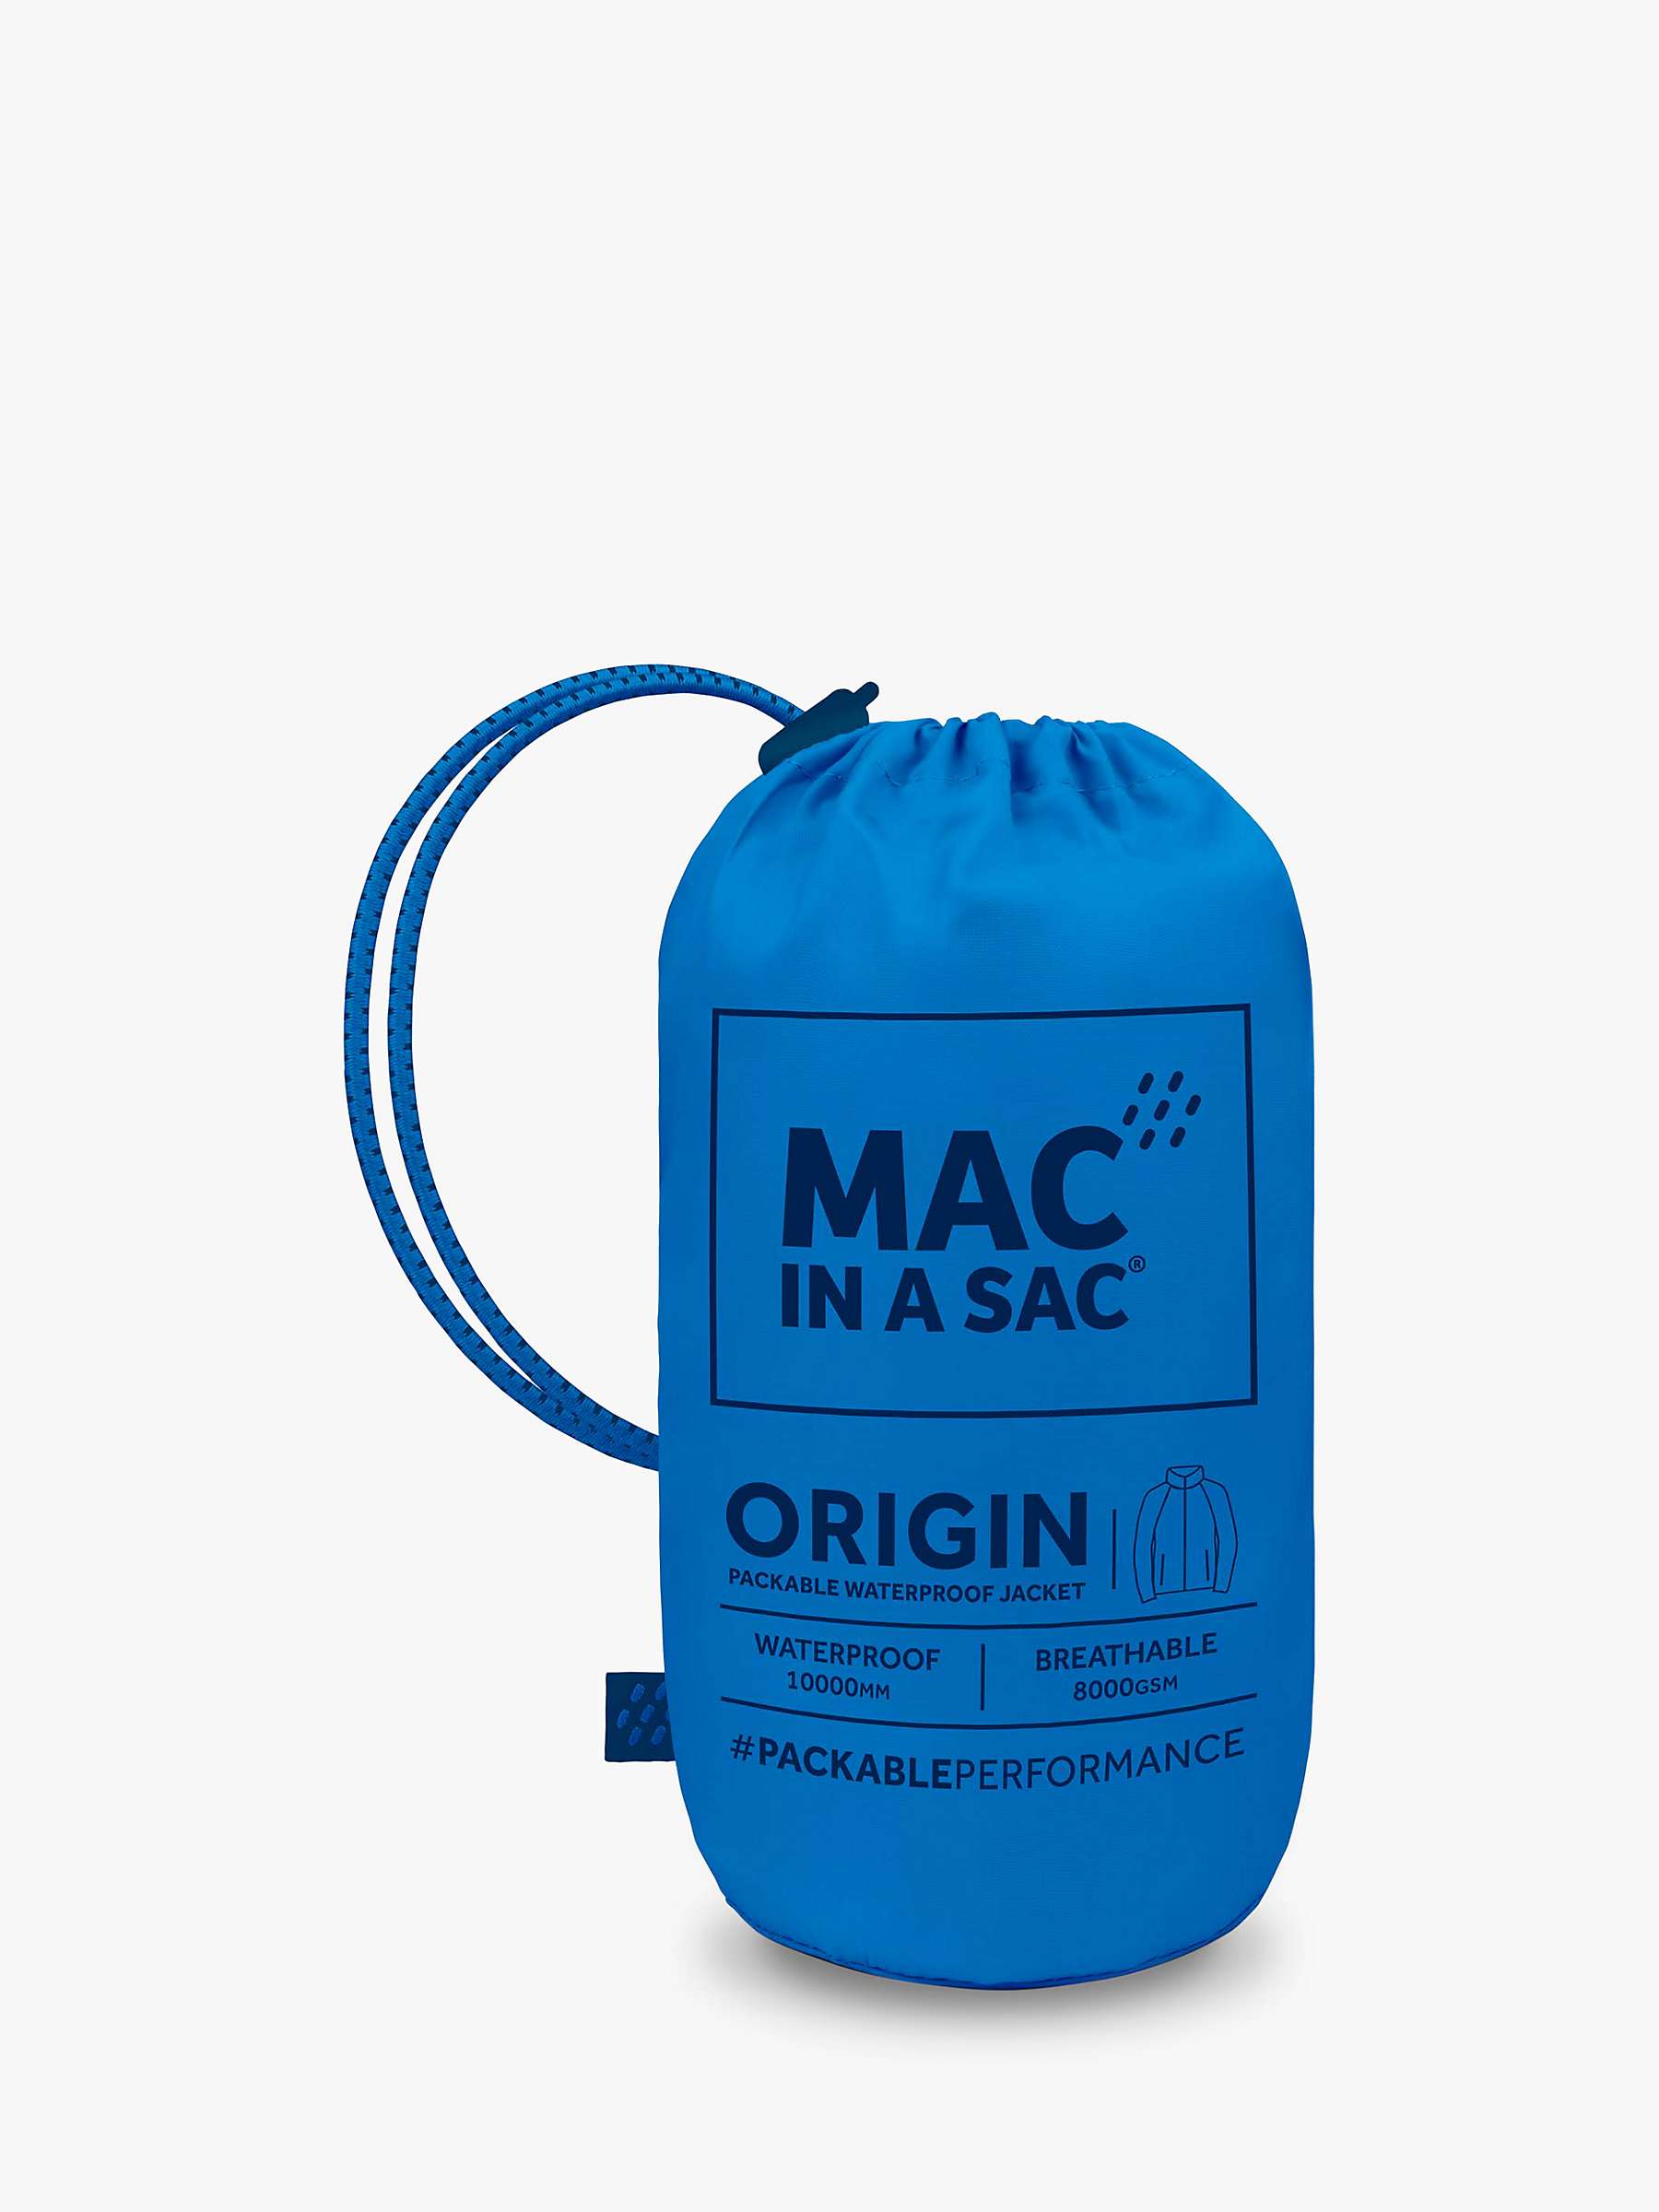 Buy Mac In A Sac Origin II Unisex Packable Waterproof Jacket Online at johnlewis.com